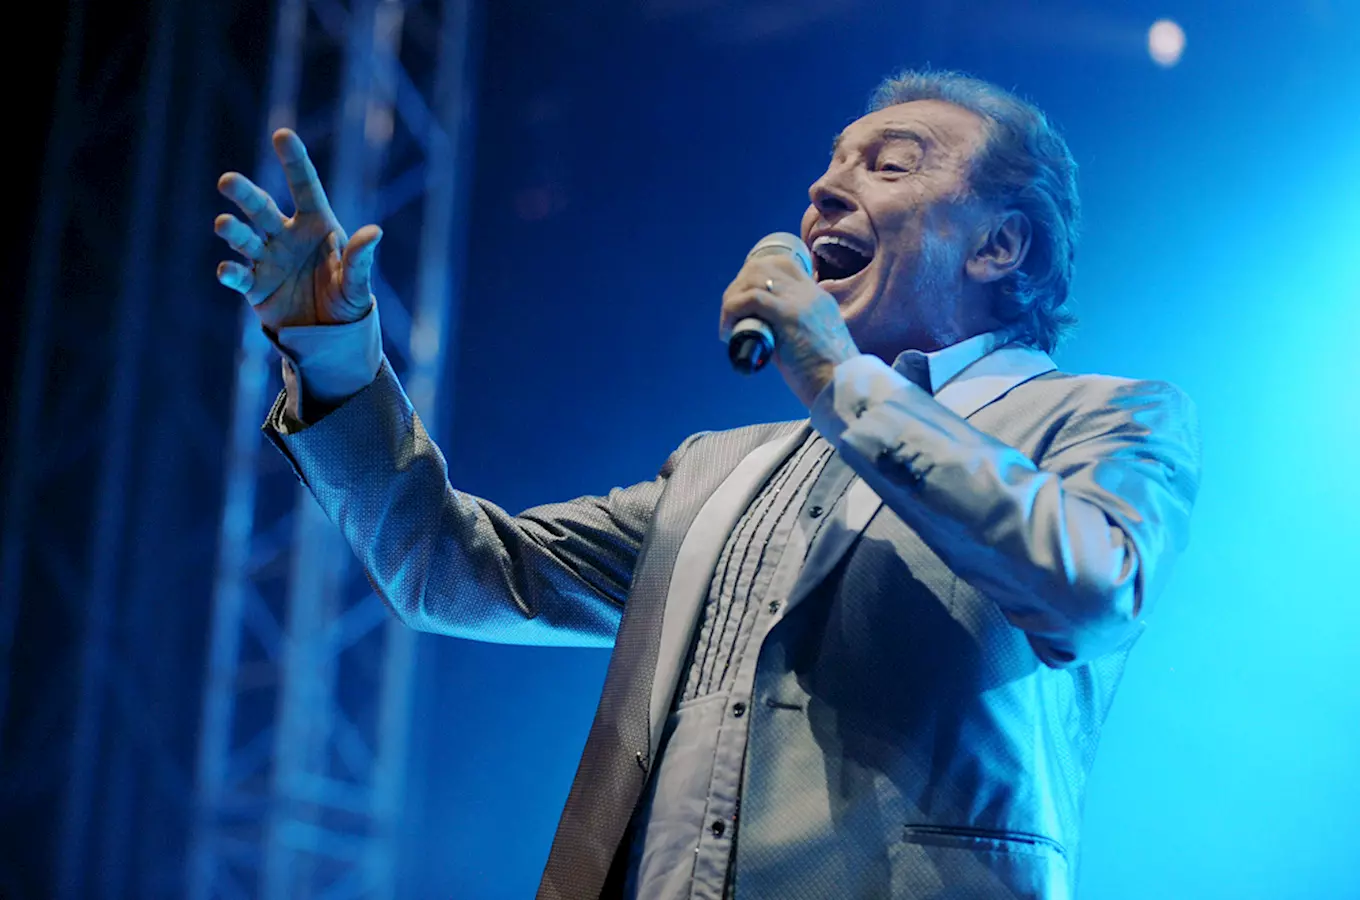 Legenda české populární hudby Karel Gott slaví 80. let! Oslavte to s ním na Benátské anebo pěkným vý